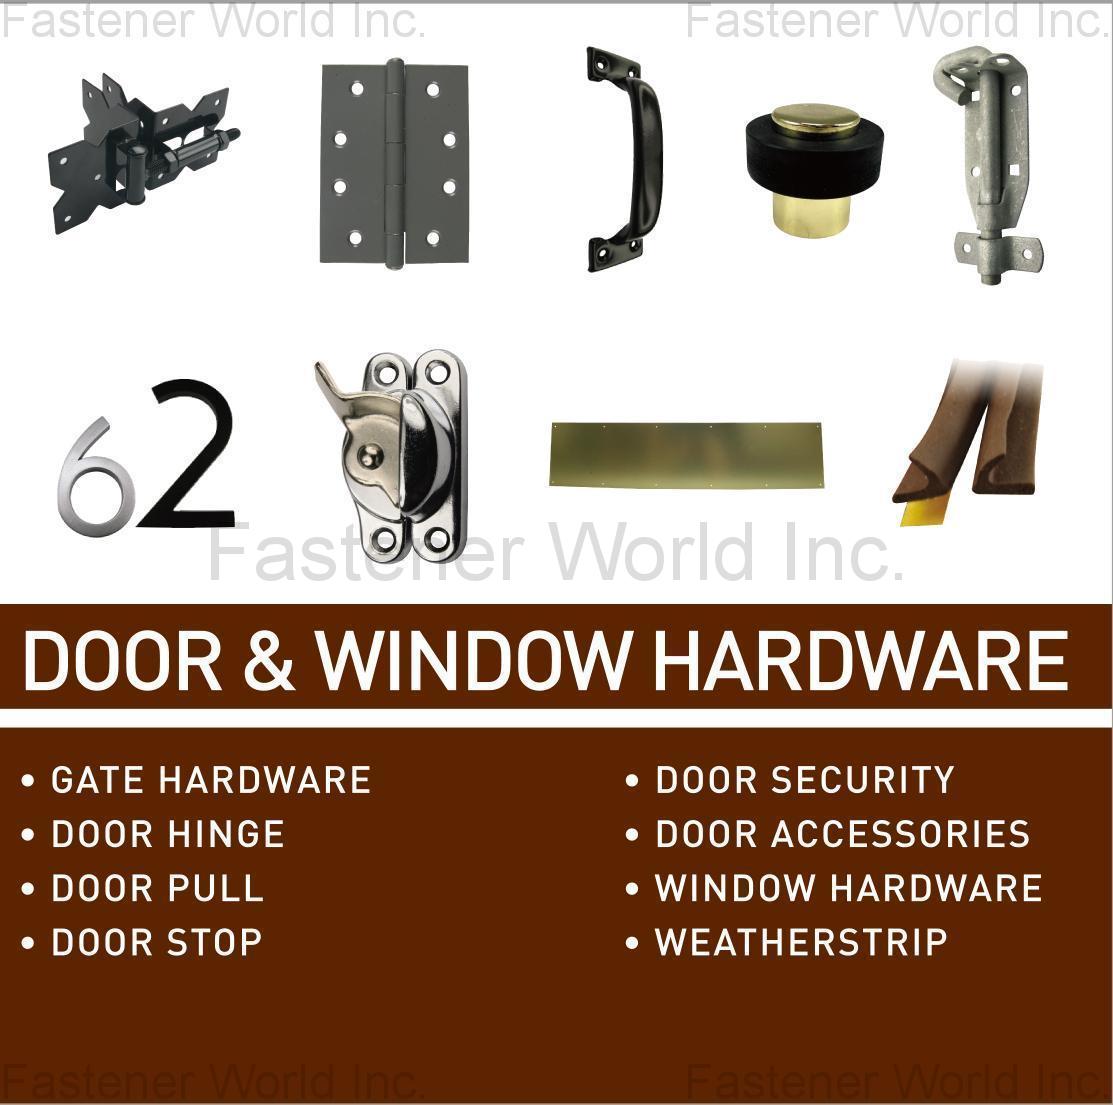 Door And Window Accessories DOOR & WINDOW HARDWARE, GATE HARDWARE, DOOR HINGE, DOOR PULL, DOOR STOP, DOOR SECURITY, DOOR ACCESSORIES, WINDOW HARDWARE, WEATHERSTRIP